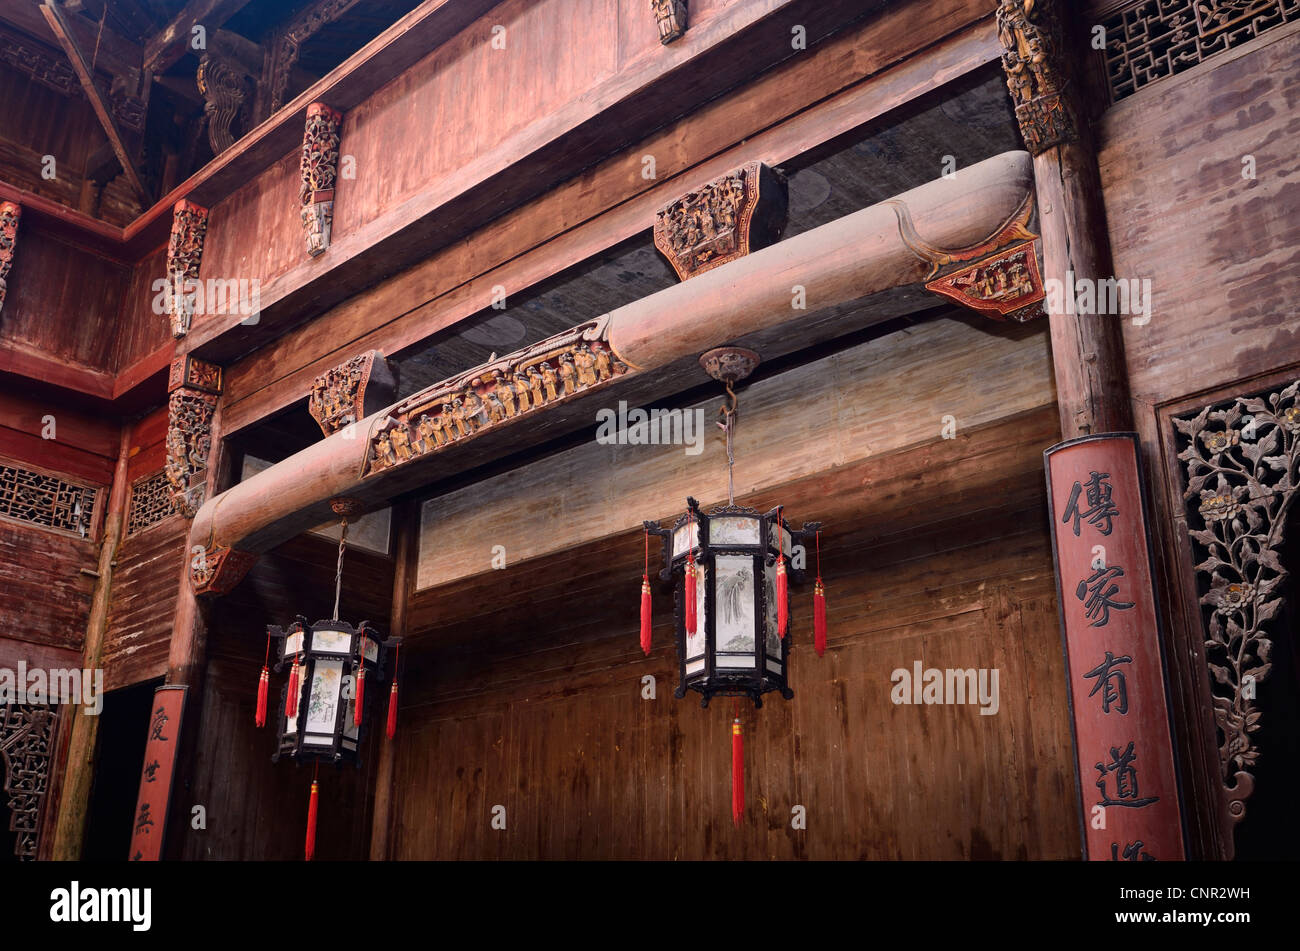 La sculpture en bois d'intérieur hall chengzhi de la dynastie Qing à hongcun village au patrimoine mondial de l'Anhui Province, China Banque D'Images